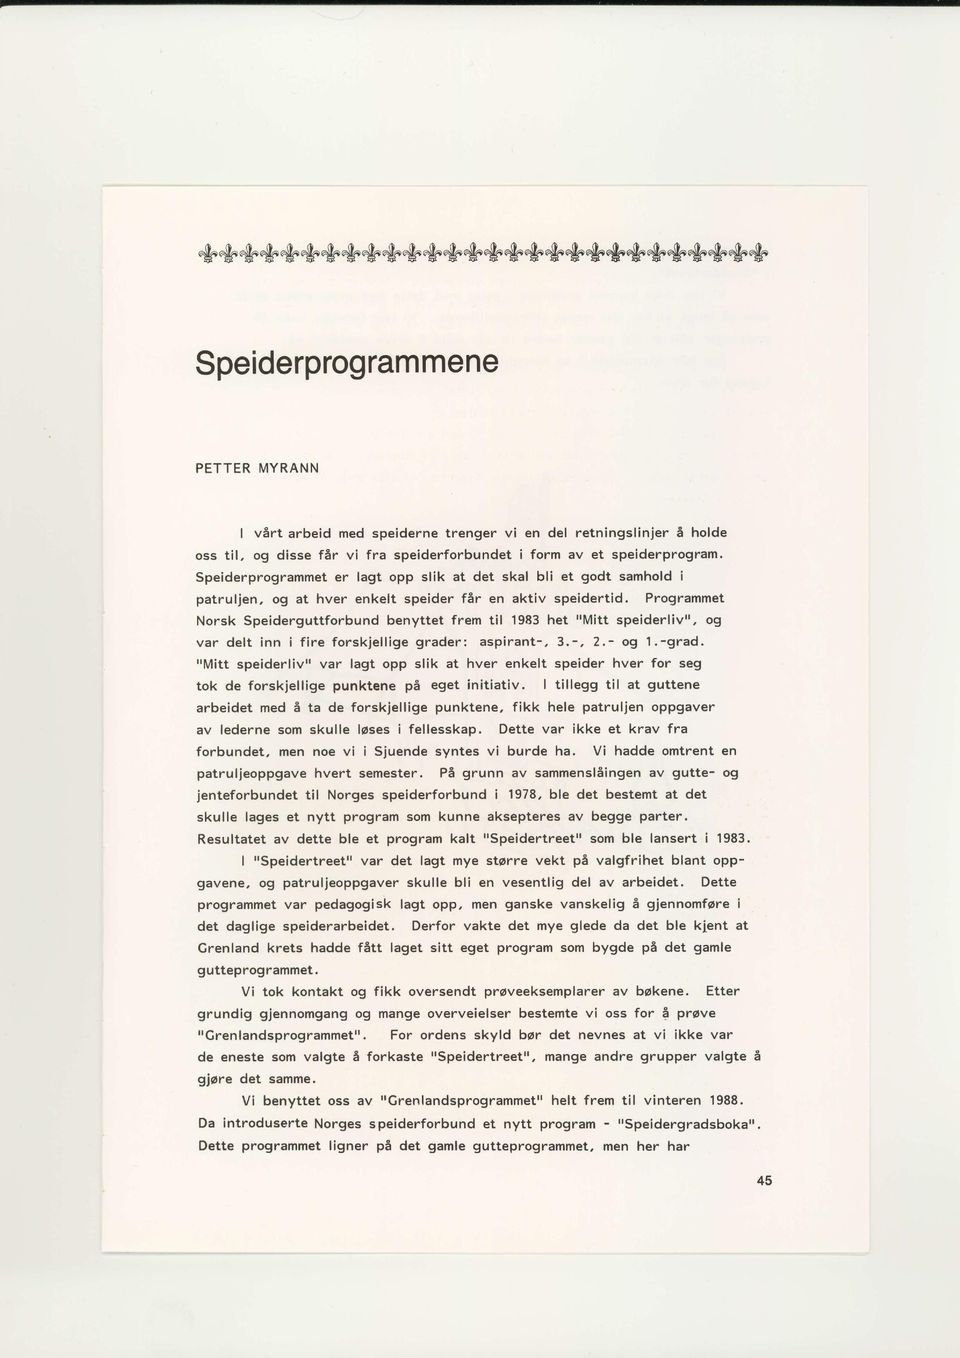 Programmet Norsk Speiderguttforbund benyttet frem til 1983 het "Mitt speiderliv", og var delt inn ifire forskjellige grader: aspirant-, 3.-,2.- og 1.-grad.